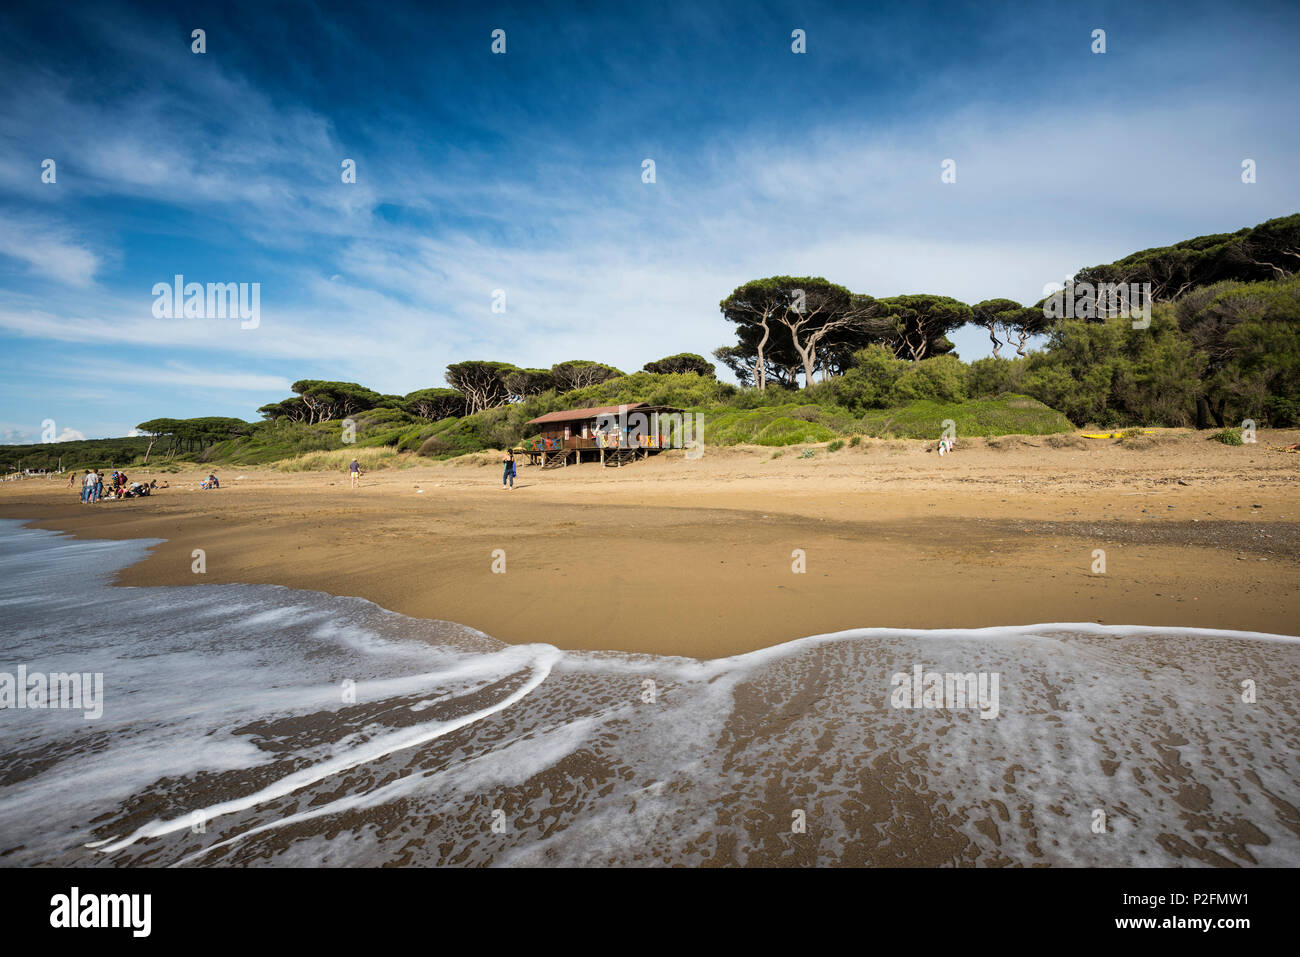 Beach bar, Populonia, near Piombino, province of Livorno, Tuscany, Italy Stock Photo